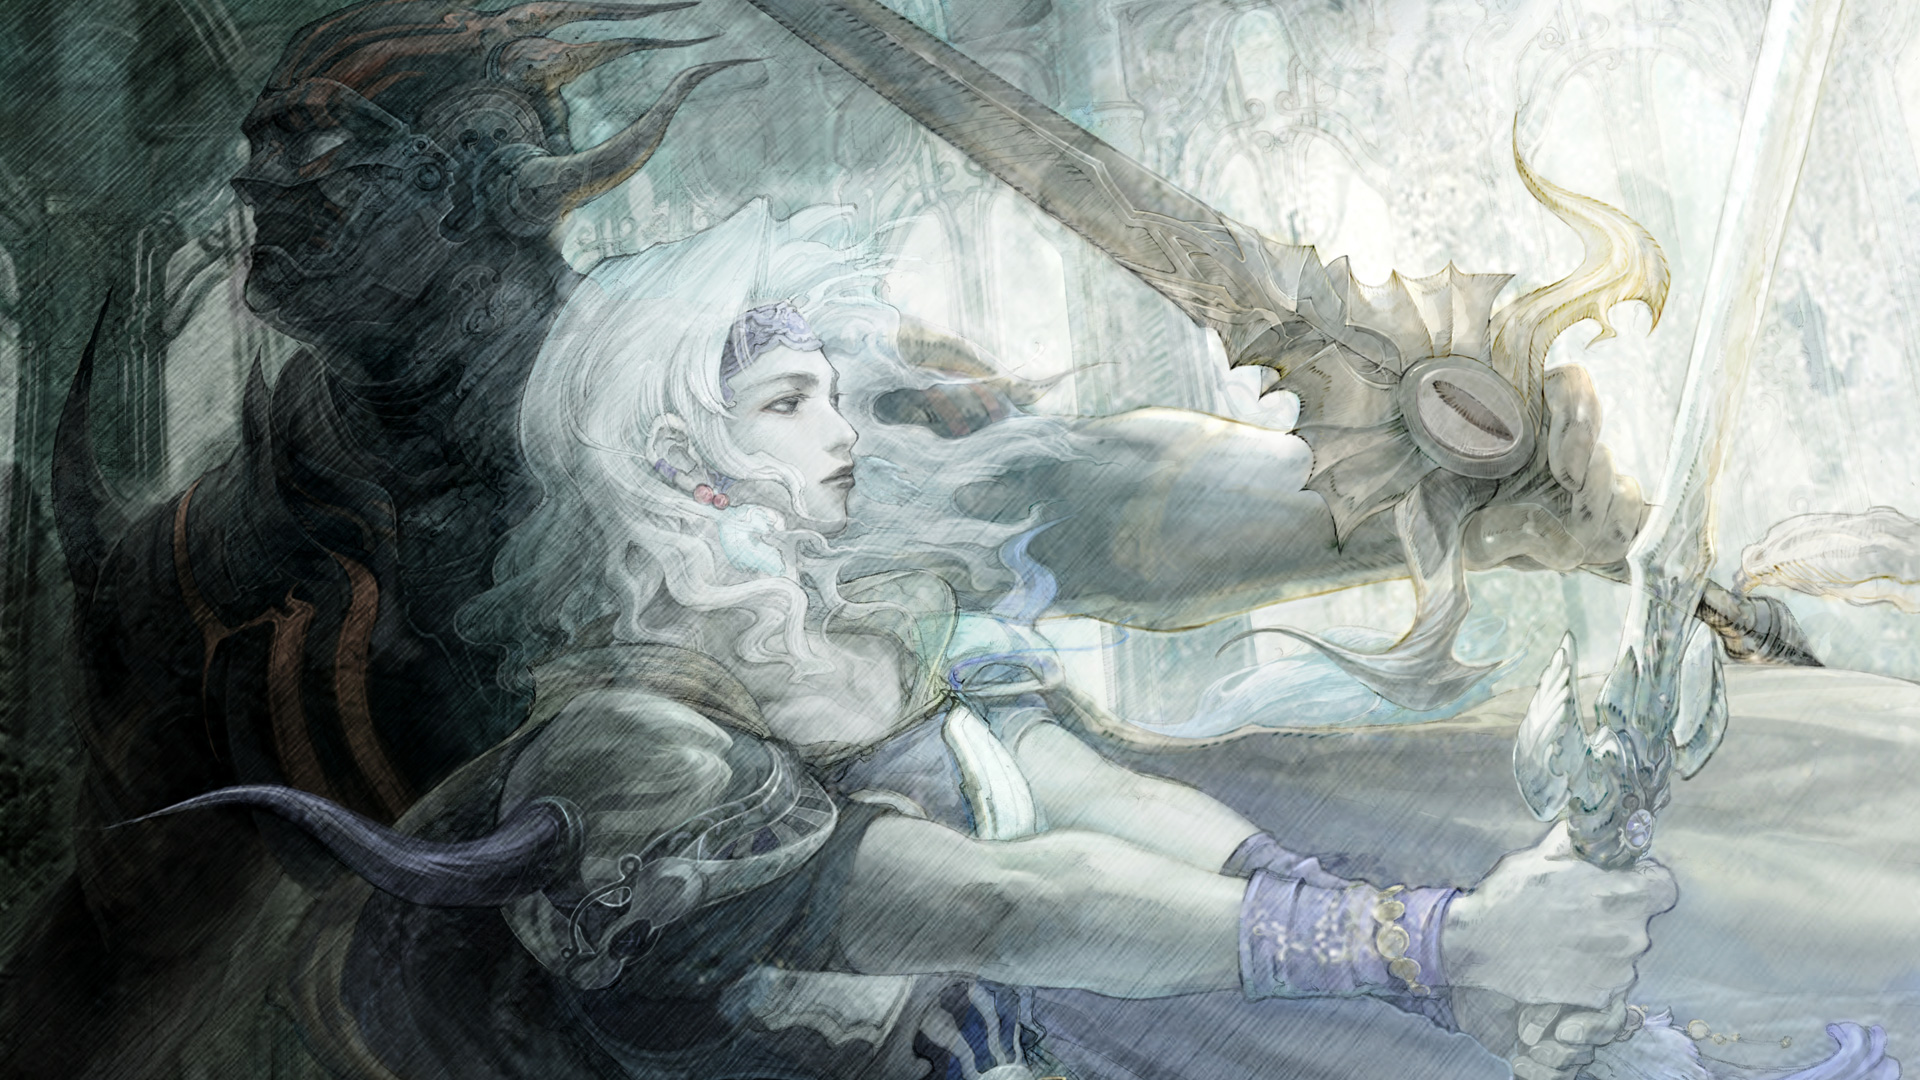 Download Final Fantasy Artwork Wallpaper Full HD Wallpapers